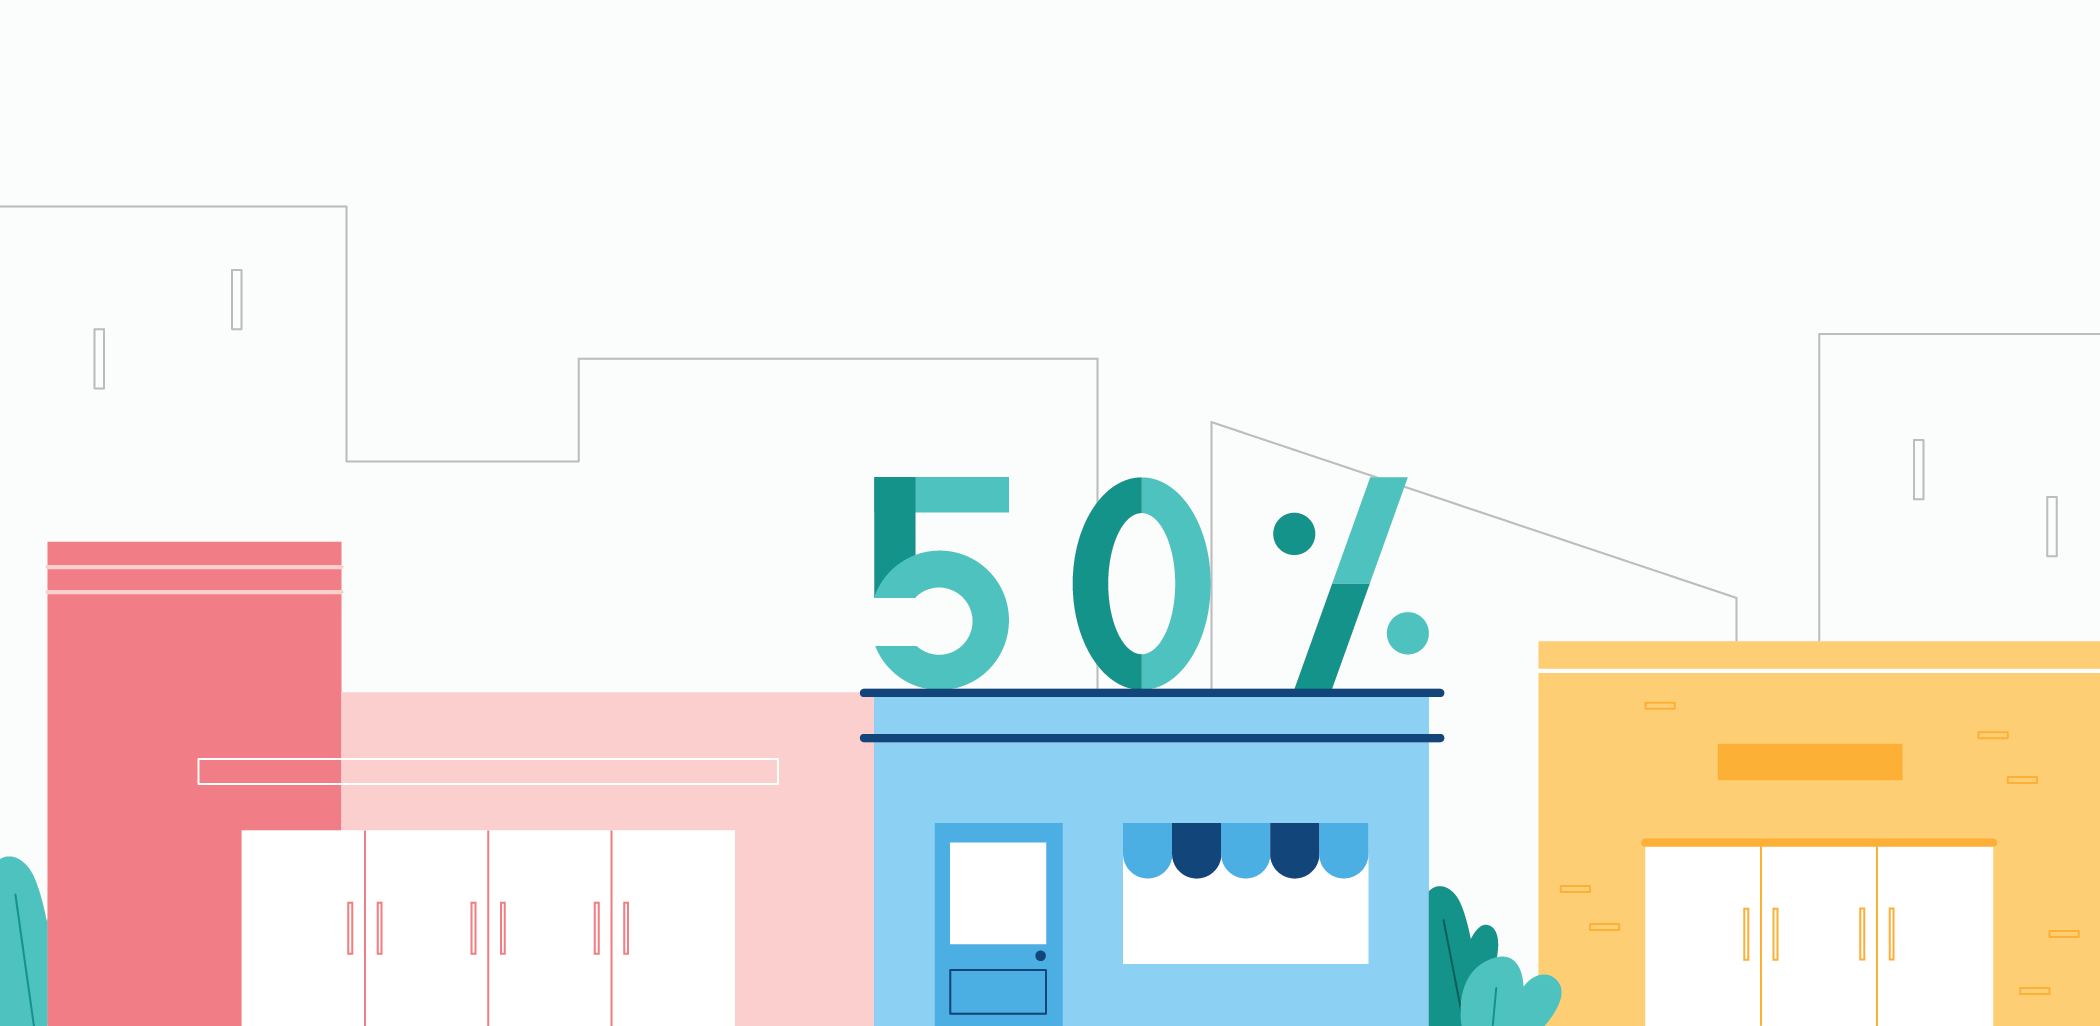 Il 50% dei clienti visitavano il negozio per la prima volta, e altre statistiche interessanti